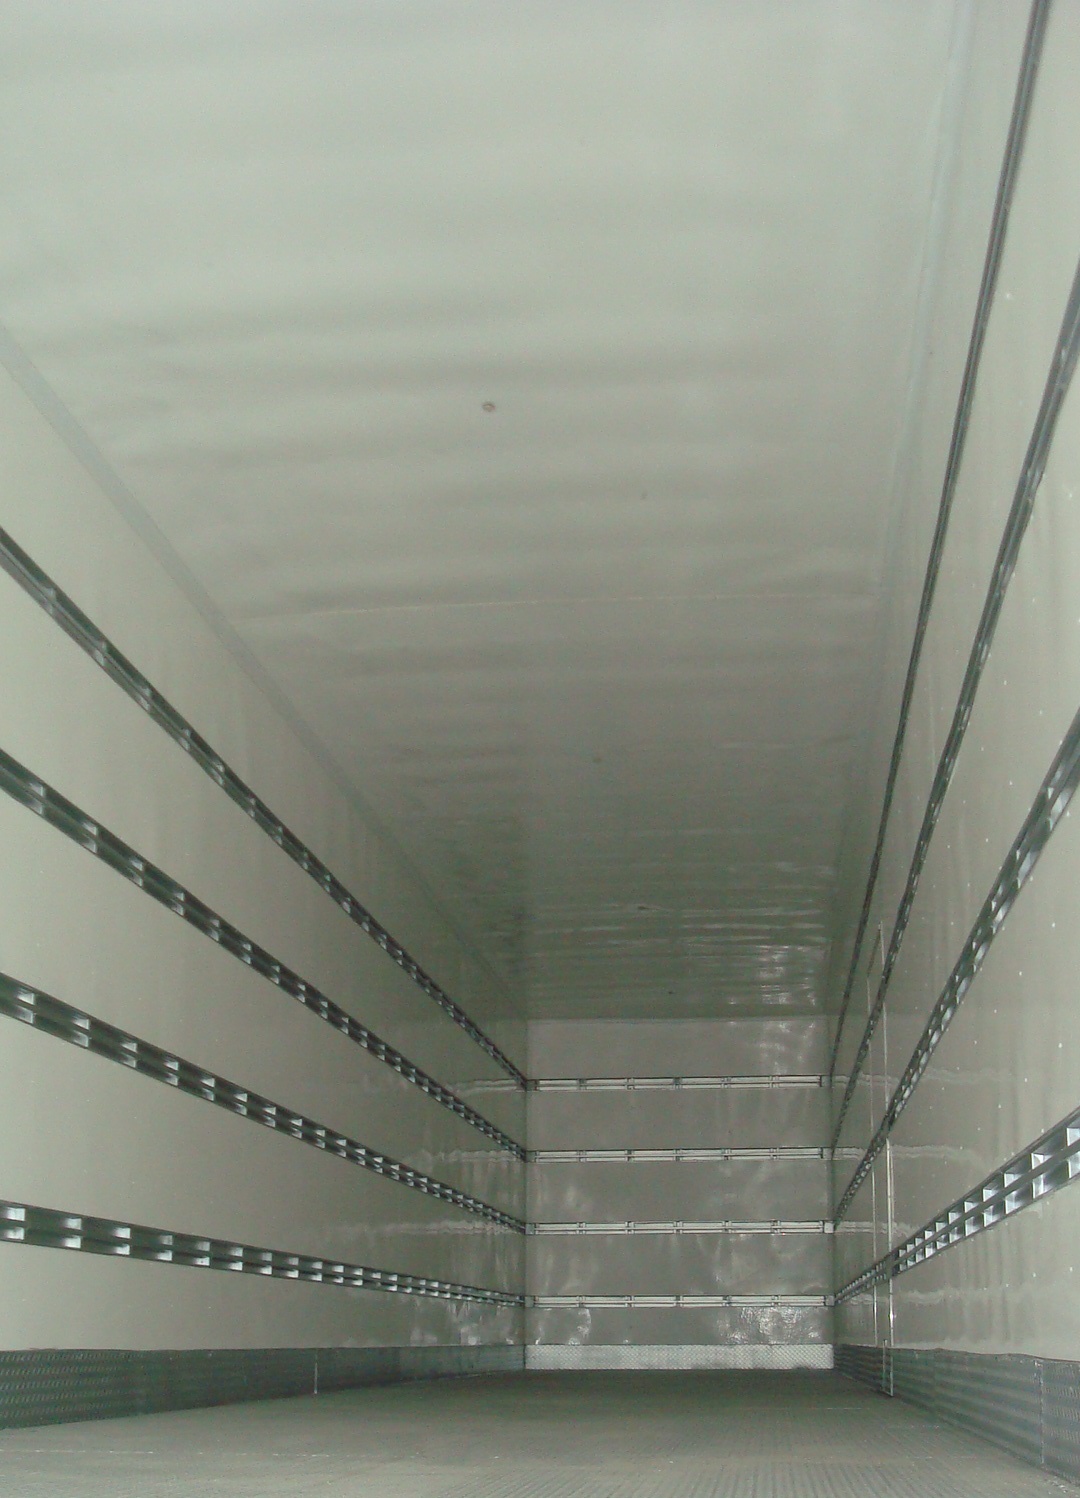 Revestimento interno com placas de poliuterano ou EPS, fechamento com Eucatex, Fibralit, chapa galvanizada, alumínio ou PVC